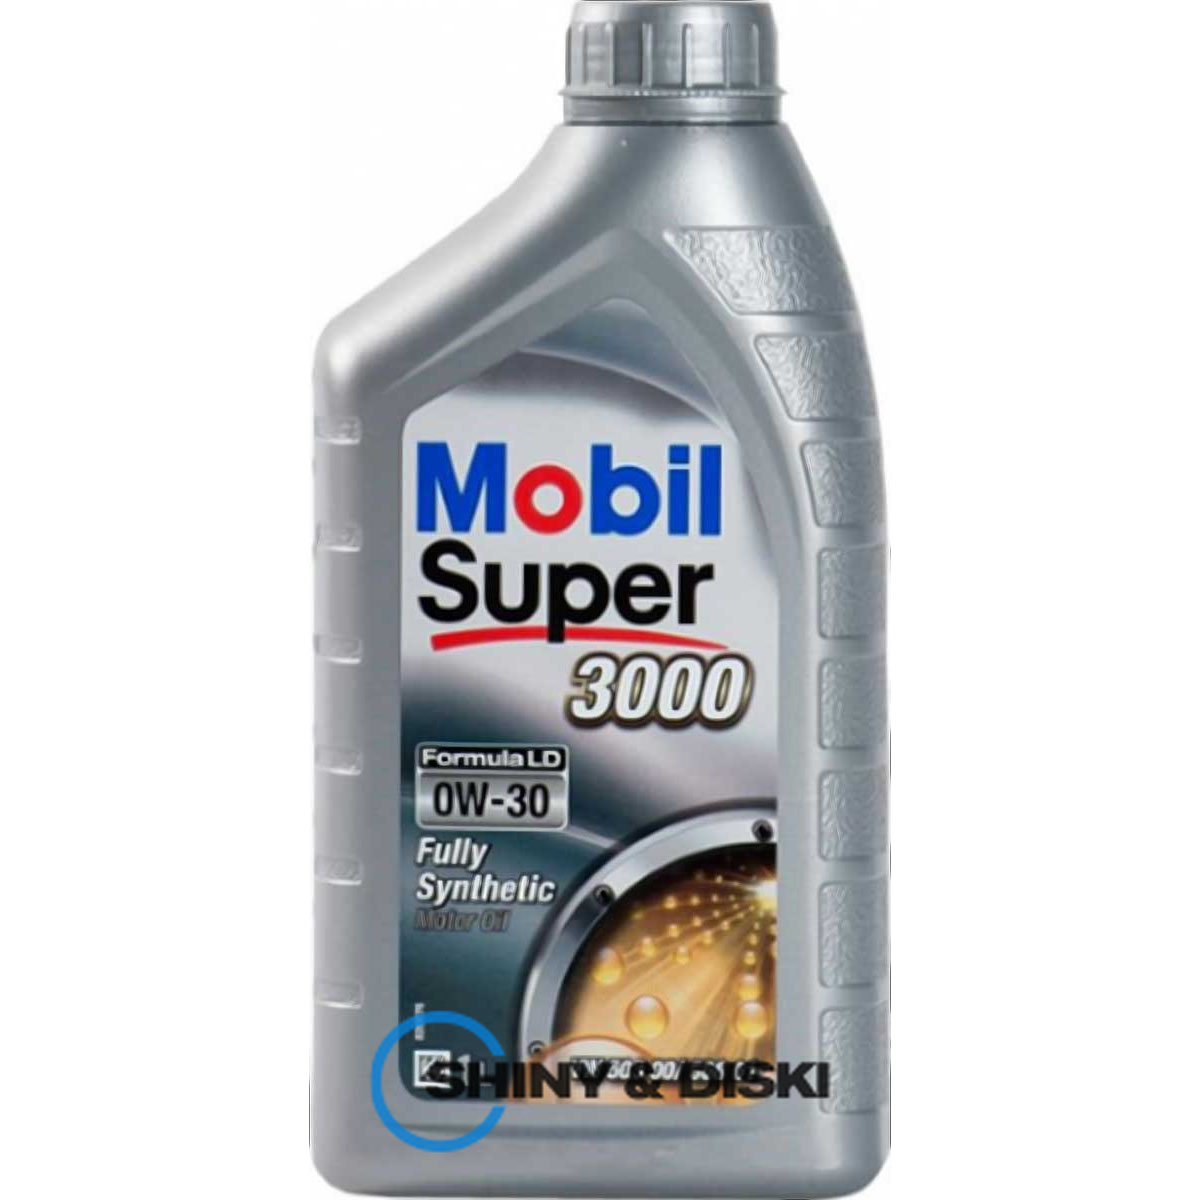 mobil super 3000 formula ld